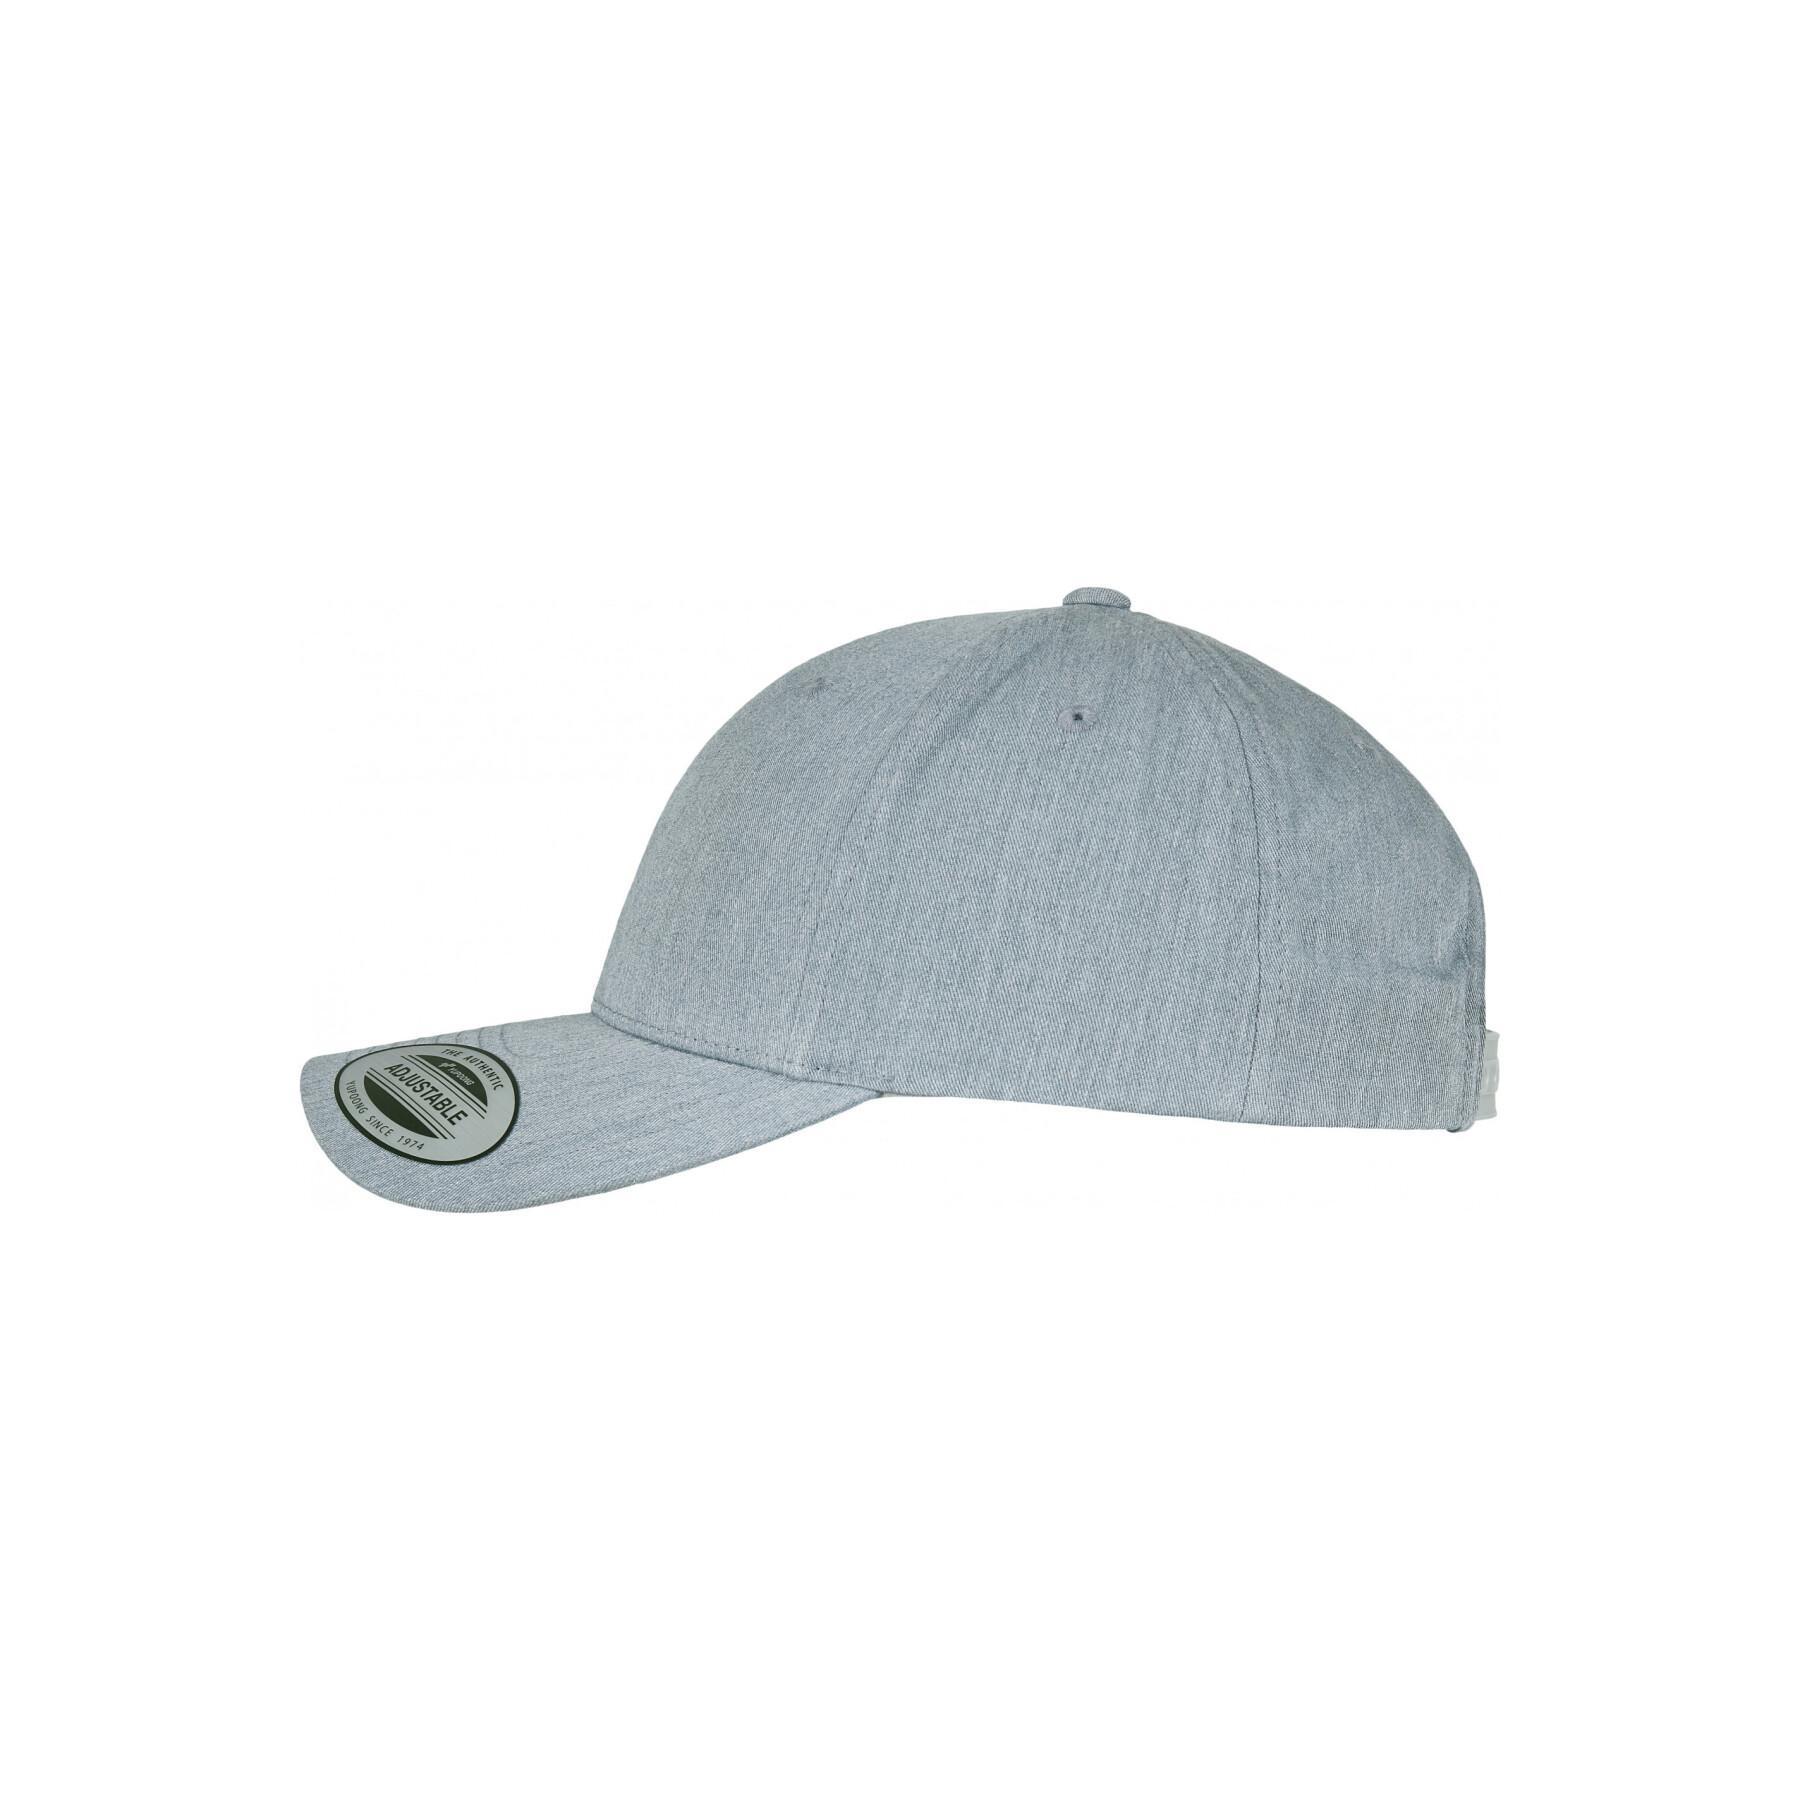 Classic curved cap Flexfit - Baseball caps - Headwear - Accessories